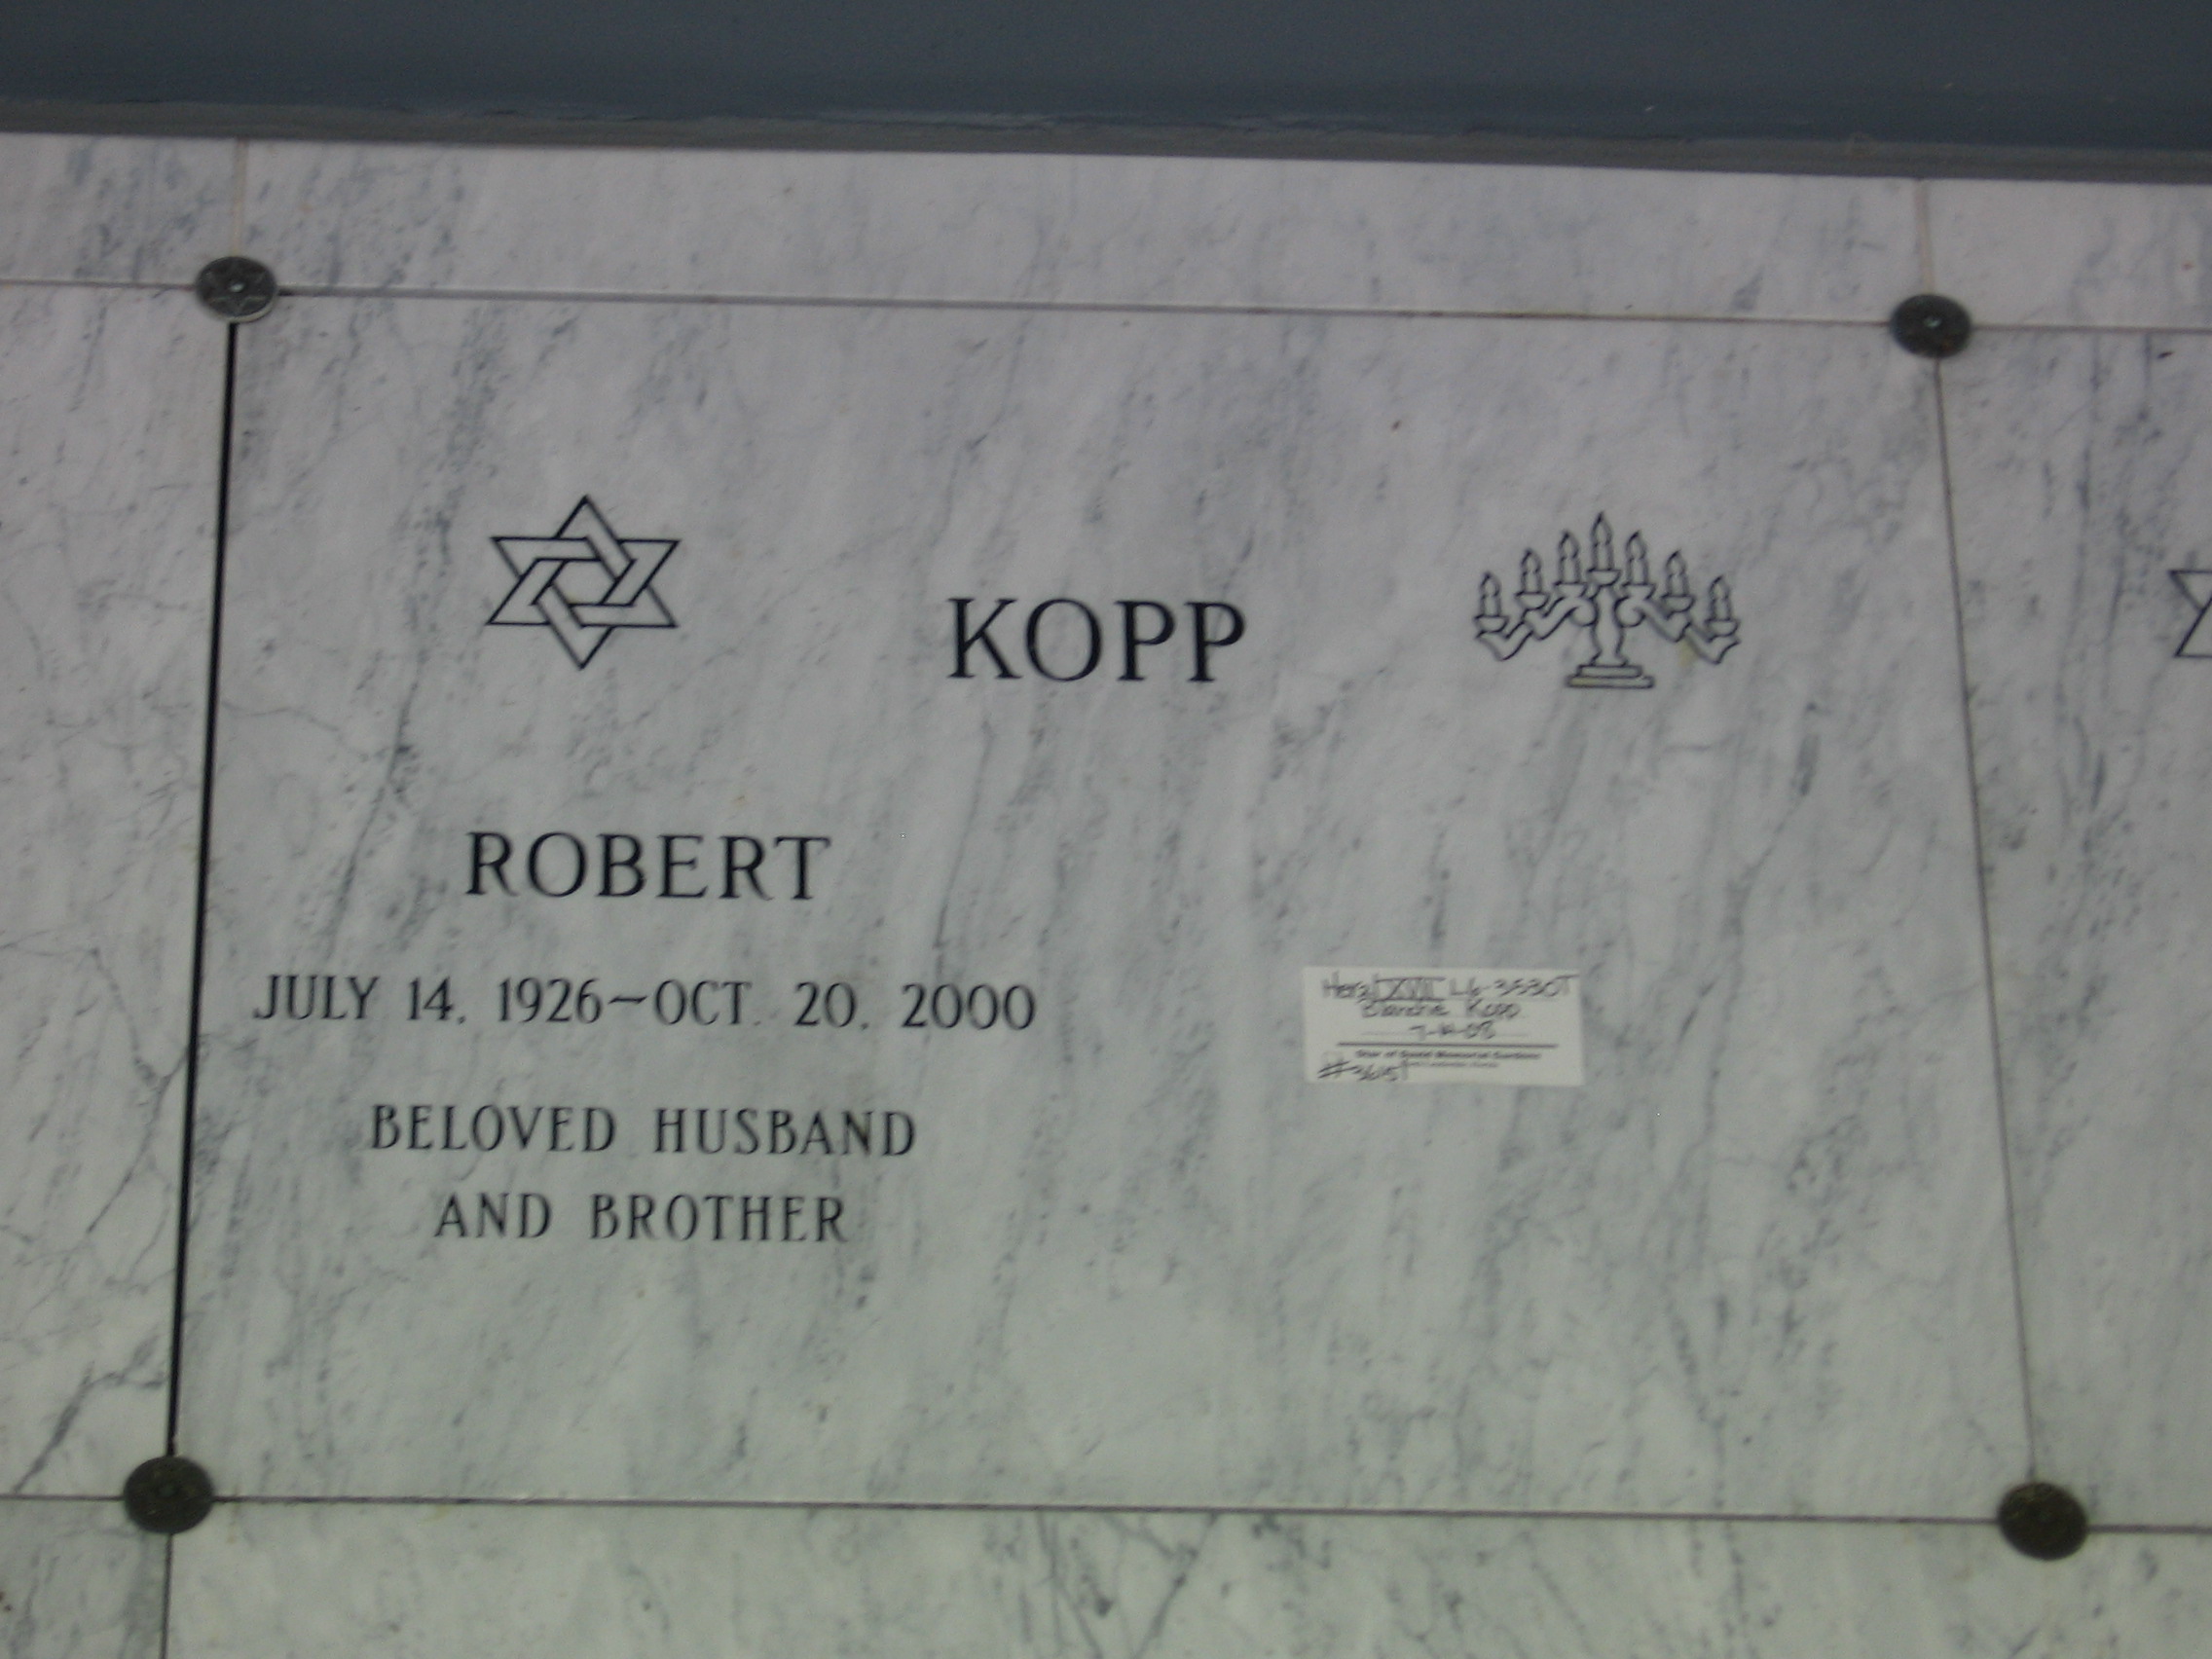 Robert Kopp